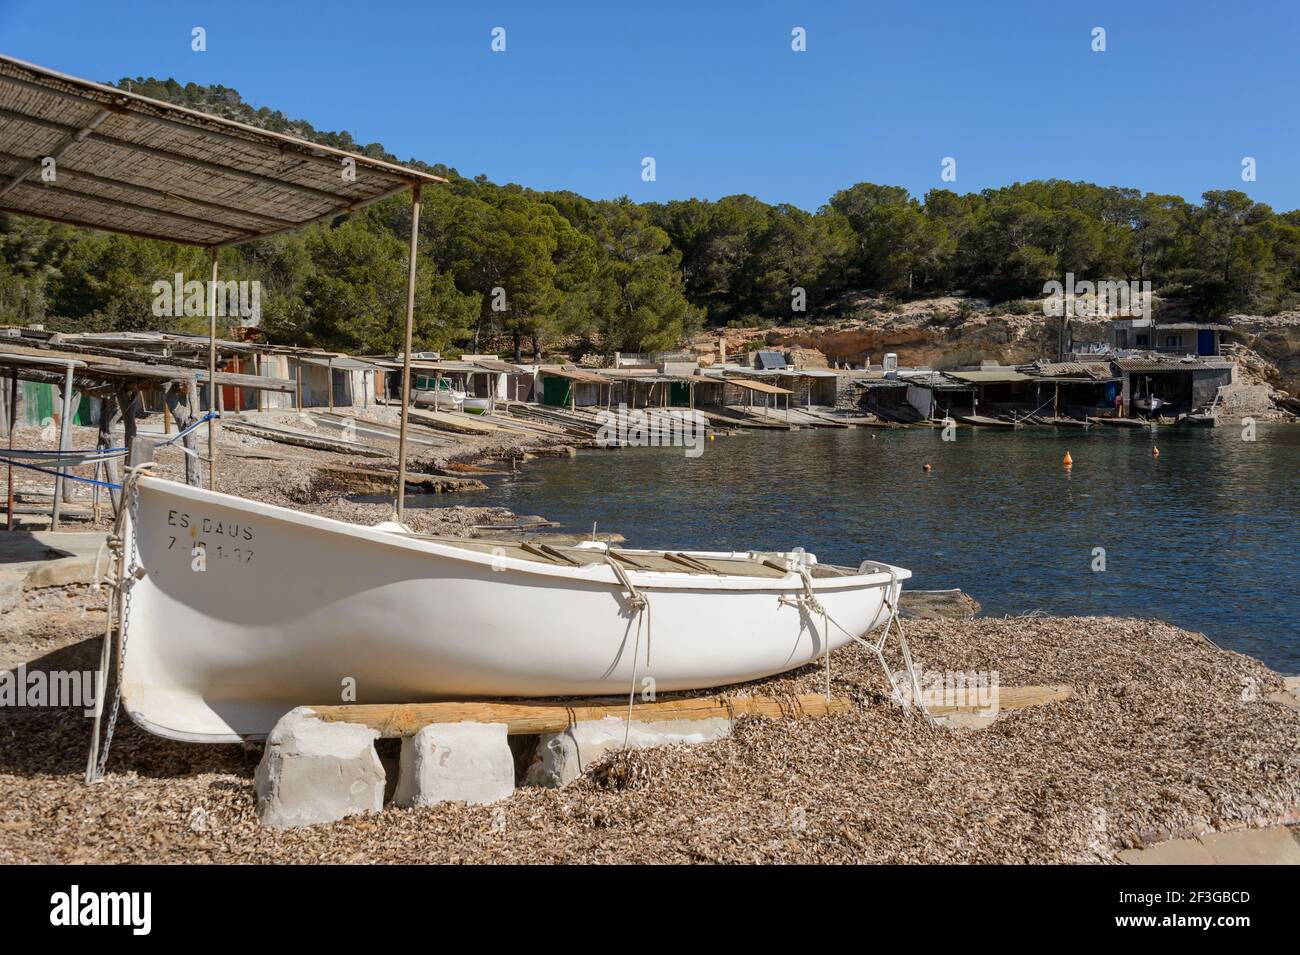 Ibiza, Espagne - 8 mars 2019 : sa Caleta est le port de pêche traditionnel de l'île d'Ibiza où les pêcheurs gardent leurs bateaux, appelés « llauts » Banque D'Images